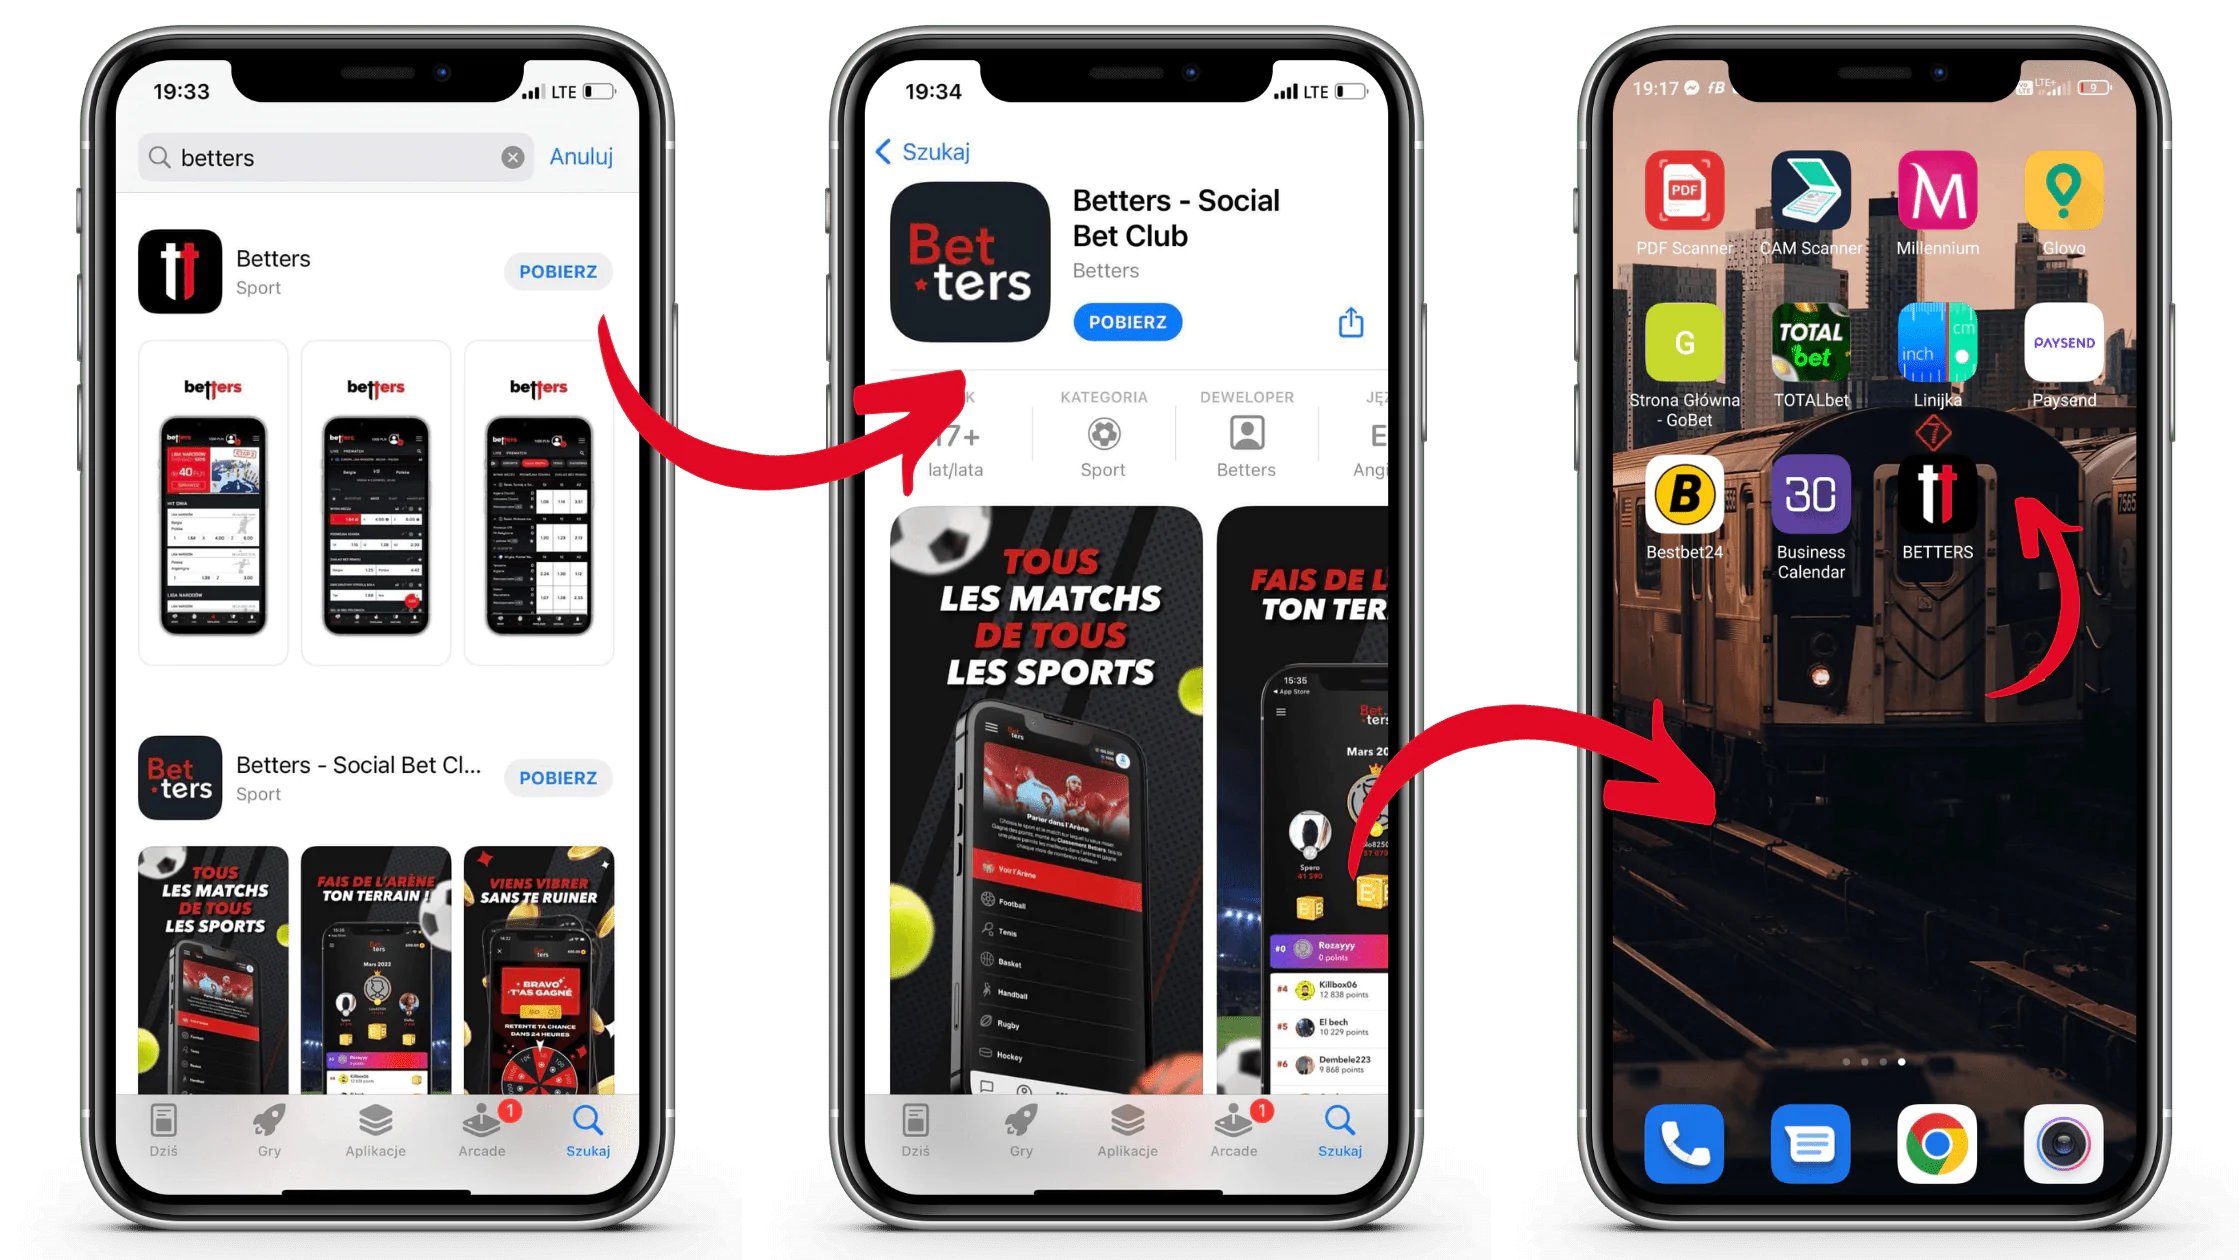 Jak pobrać aplikację mobilną Betters na IOS krok po kroku - wejdź do AppStore, wpisz nazwę aplikacji, pobierz ją i korzystaj do woli